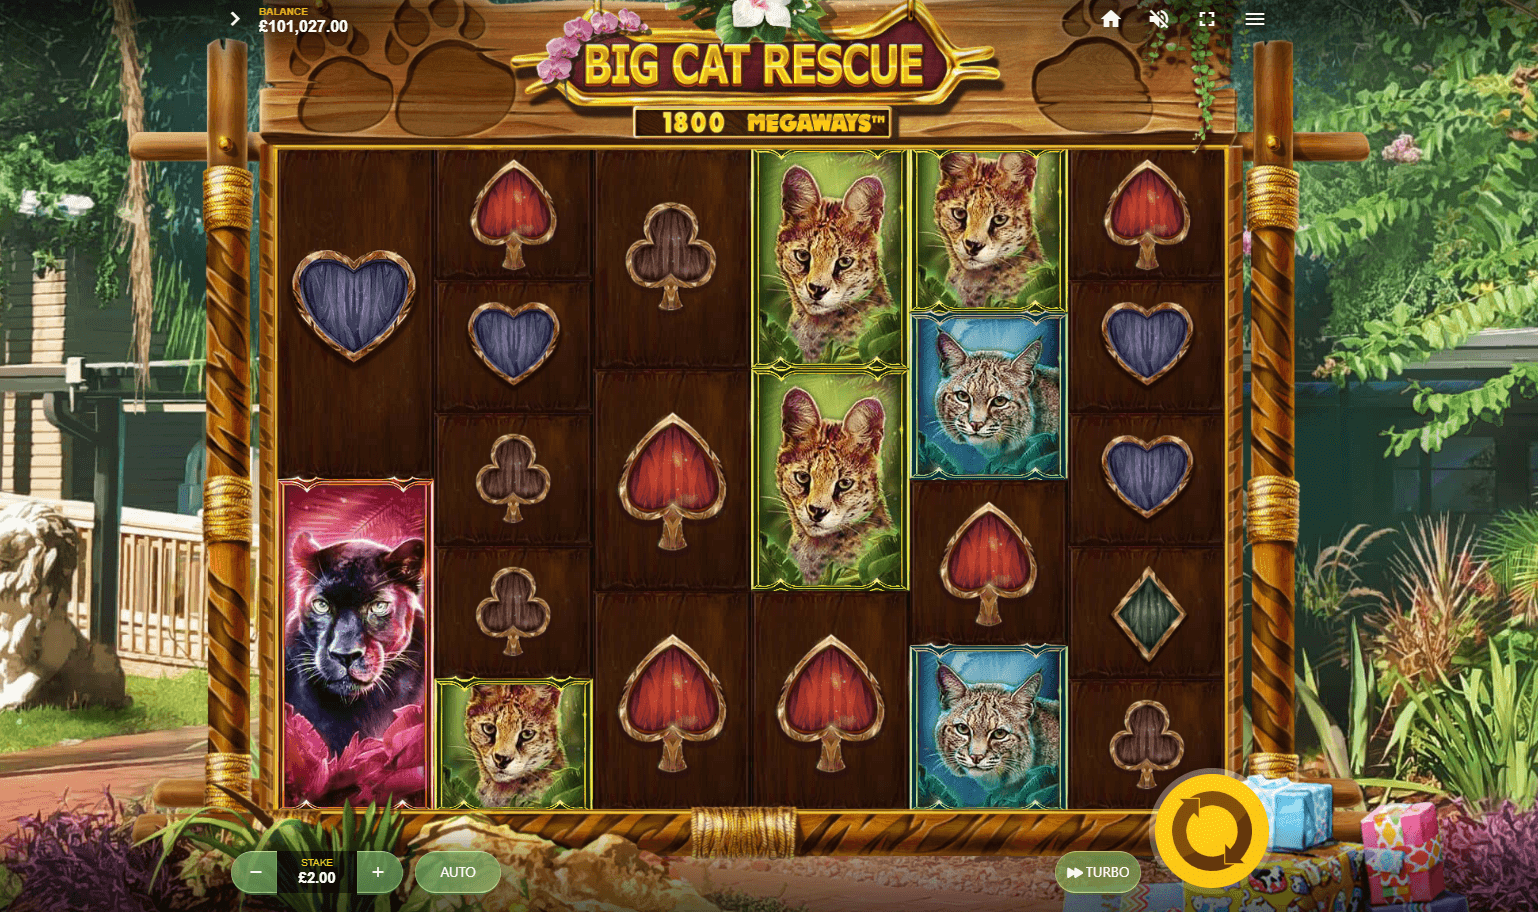 Big Cat Rescue Megaways slot review